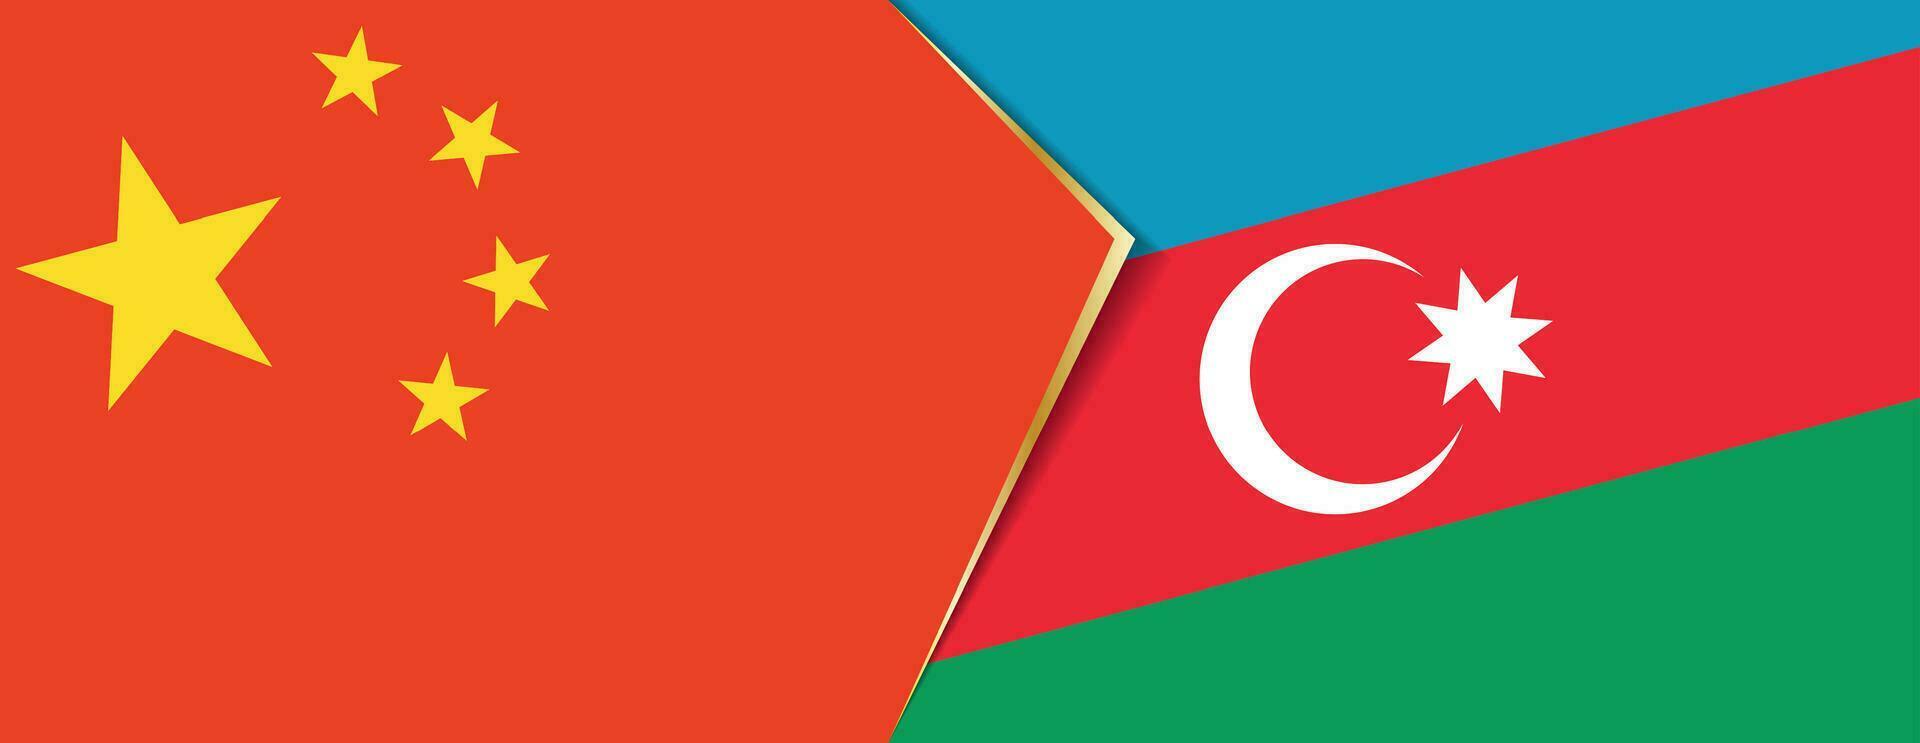 Kina och azerbaijan flaggor, två vektor flaggor.